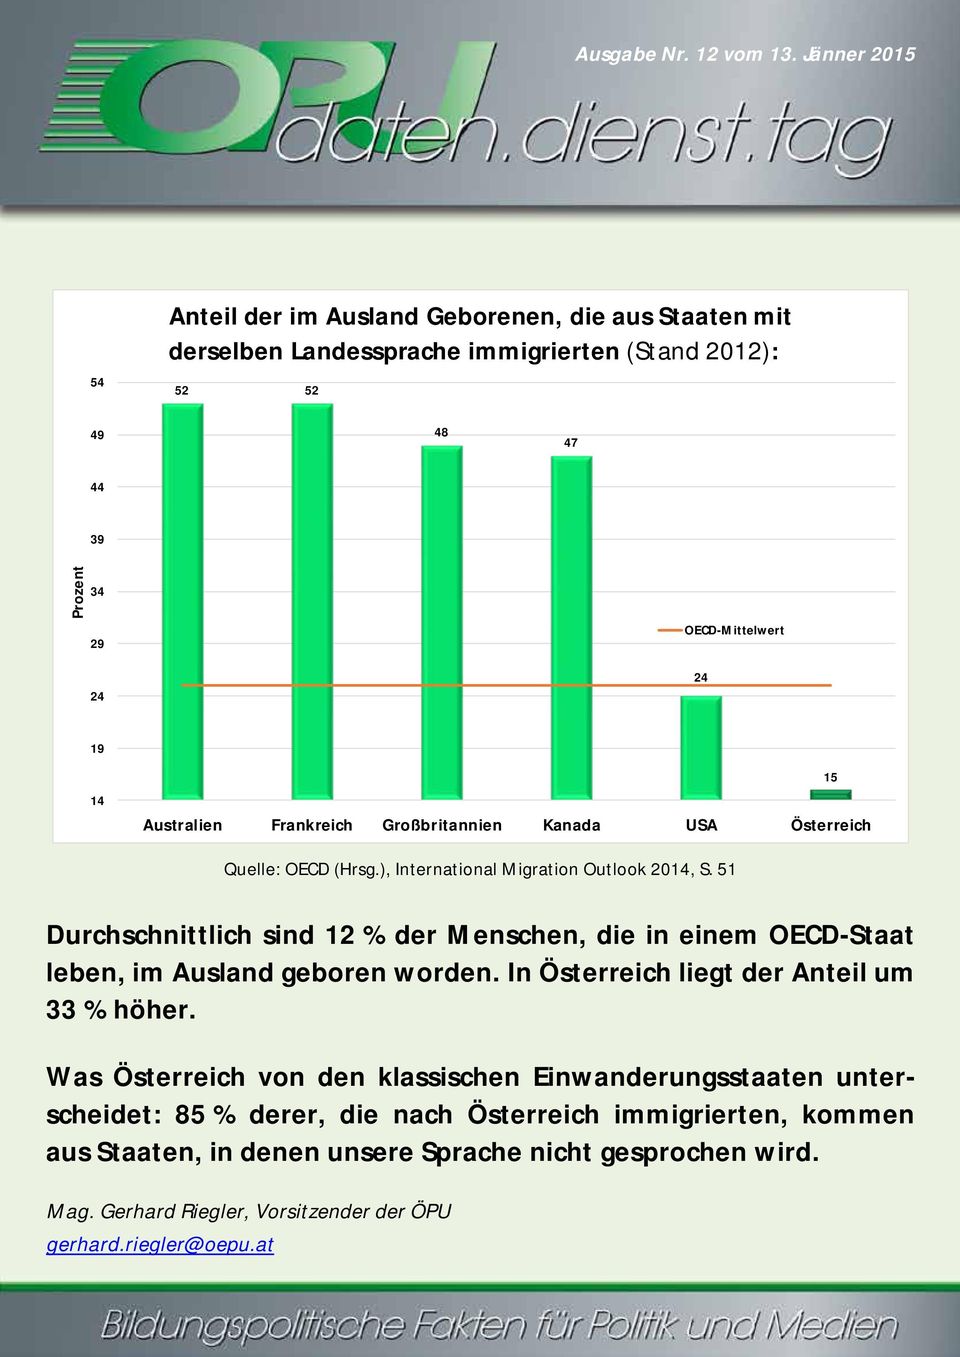 24 19 14 Australien Frankreich Großbritannien Kanada USA 15 Quelle: OECD (Hrsg.), International Migration Outlook 2014, S.